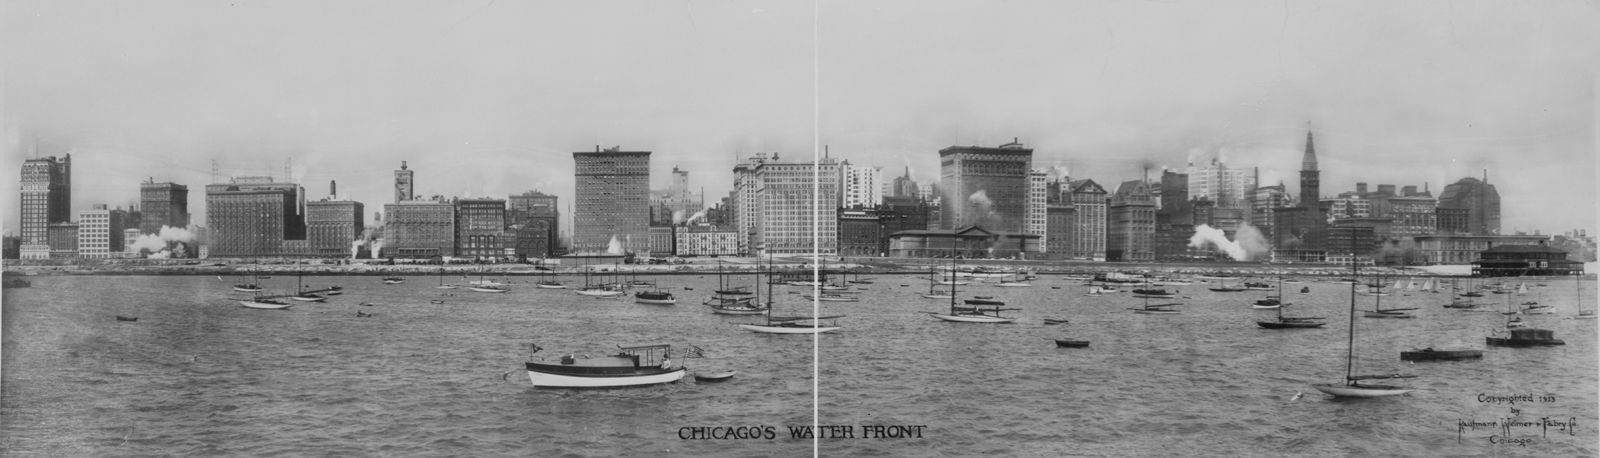 Chicago ca. 1913, Quelle: http://freepages.genealogy.rootsweb.ancestry.com/~ziemer/OLSON/ECKLUND/ecklund.html